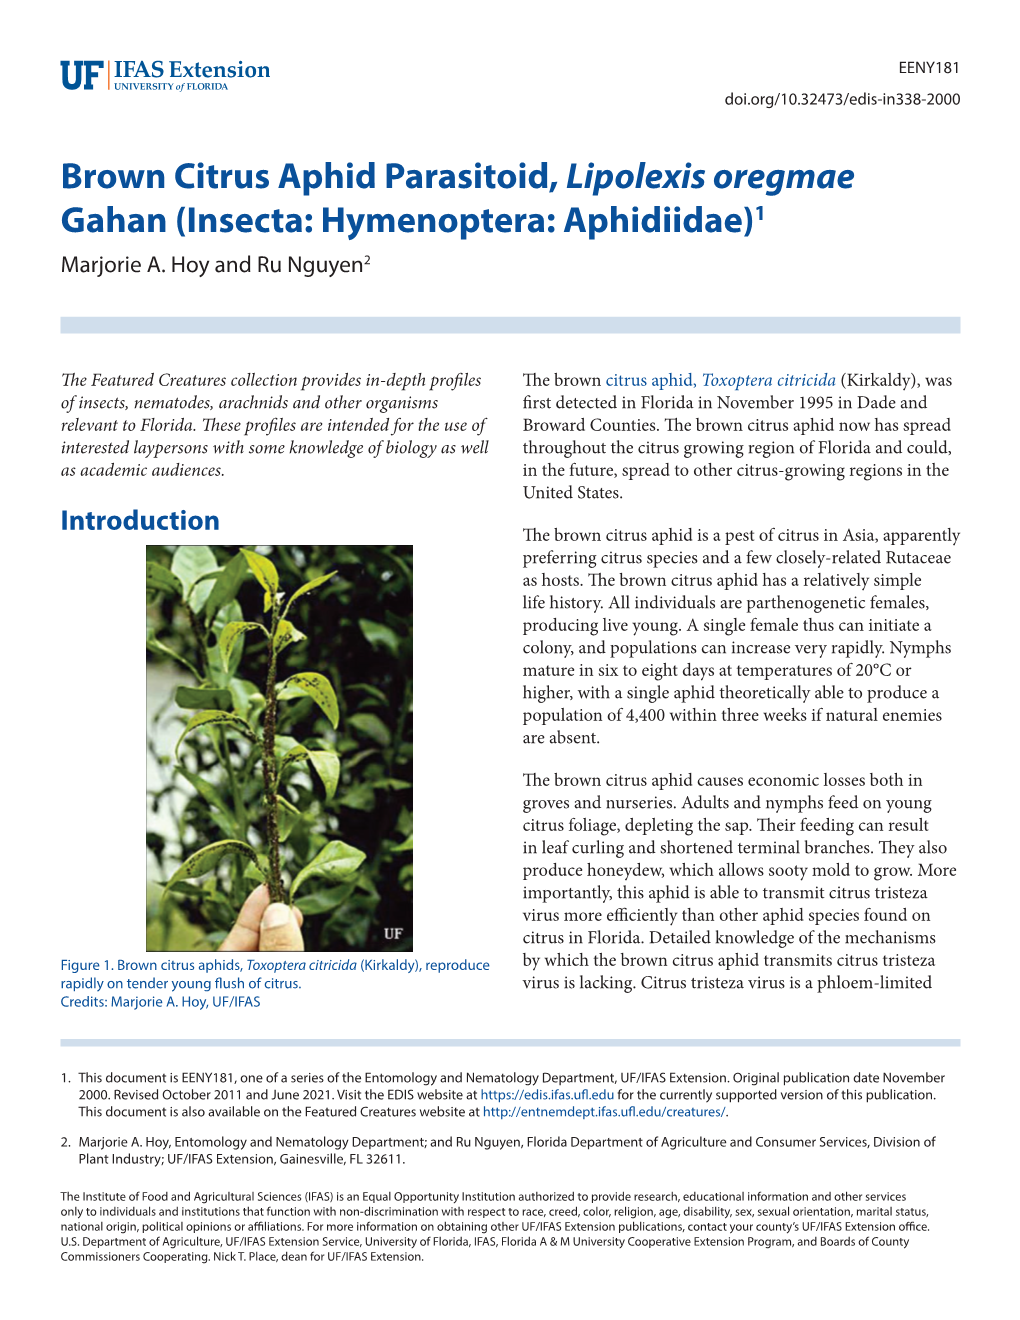 Brown Citrus Aphid Parasitoid, Lipolexis Scutellaris Mackauer